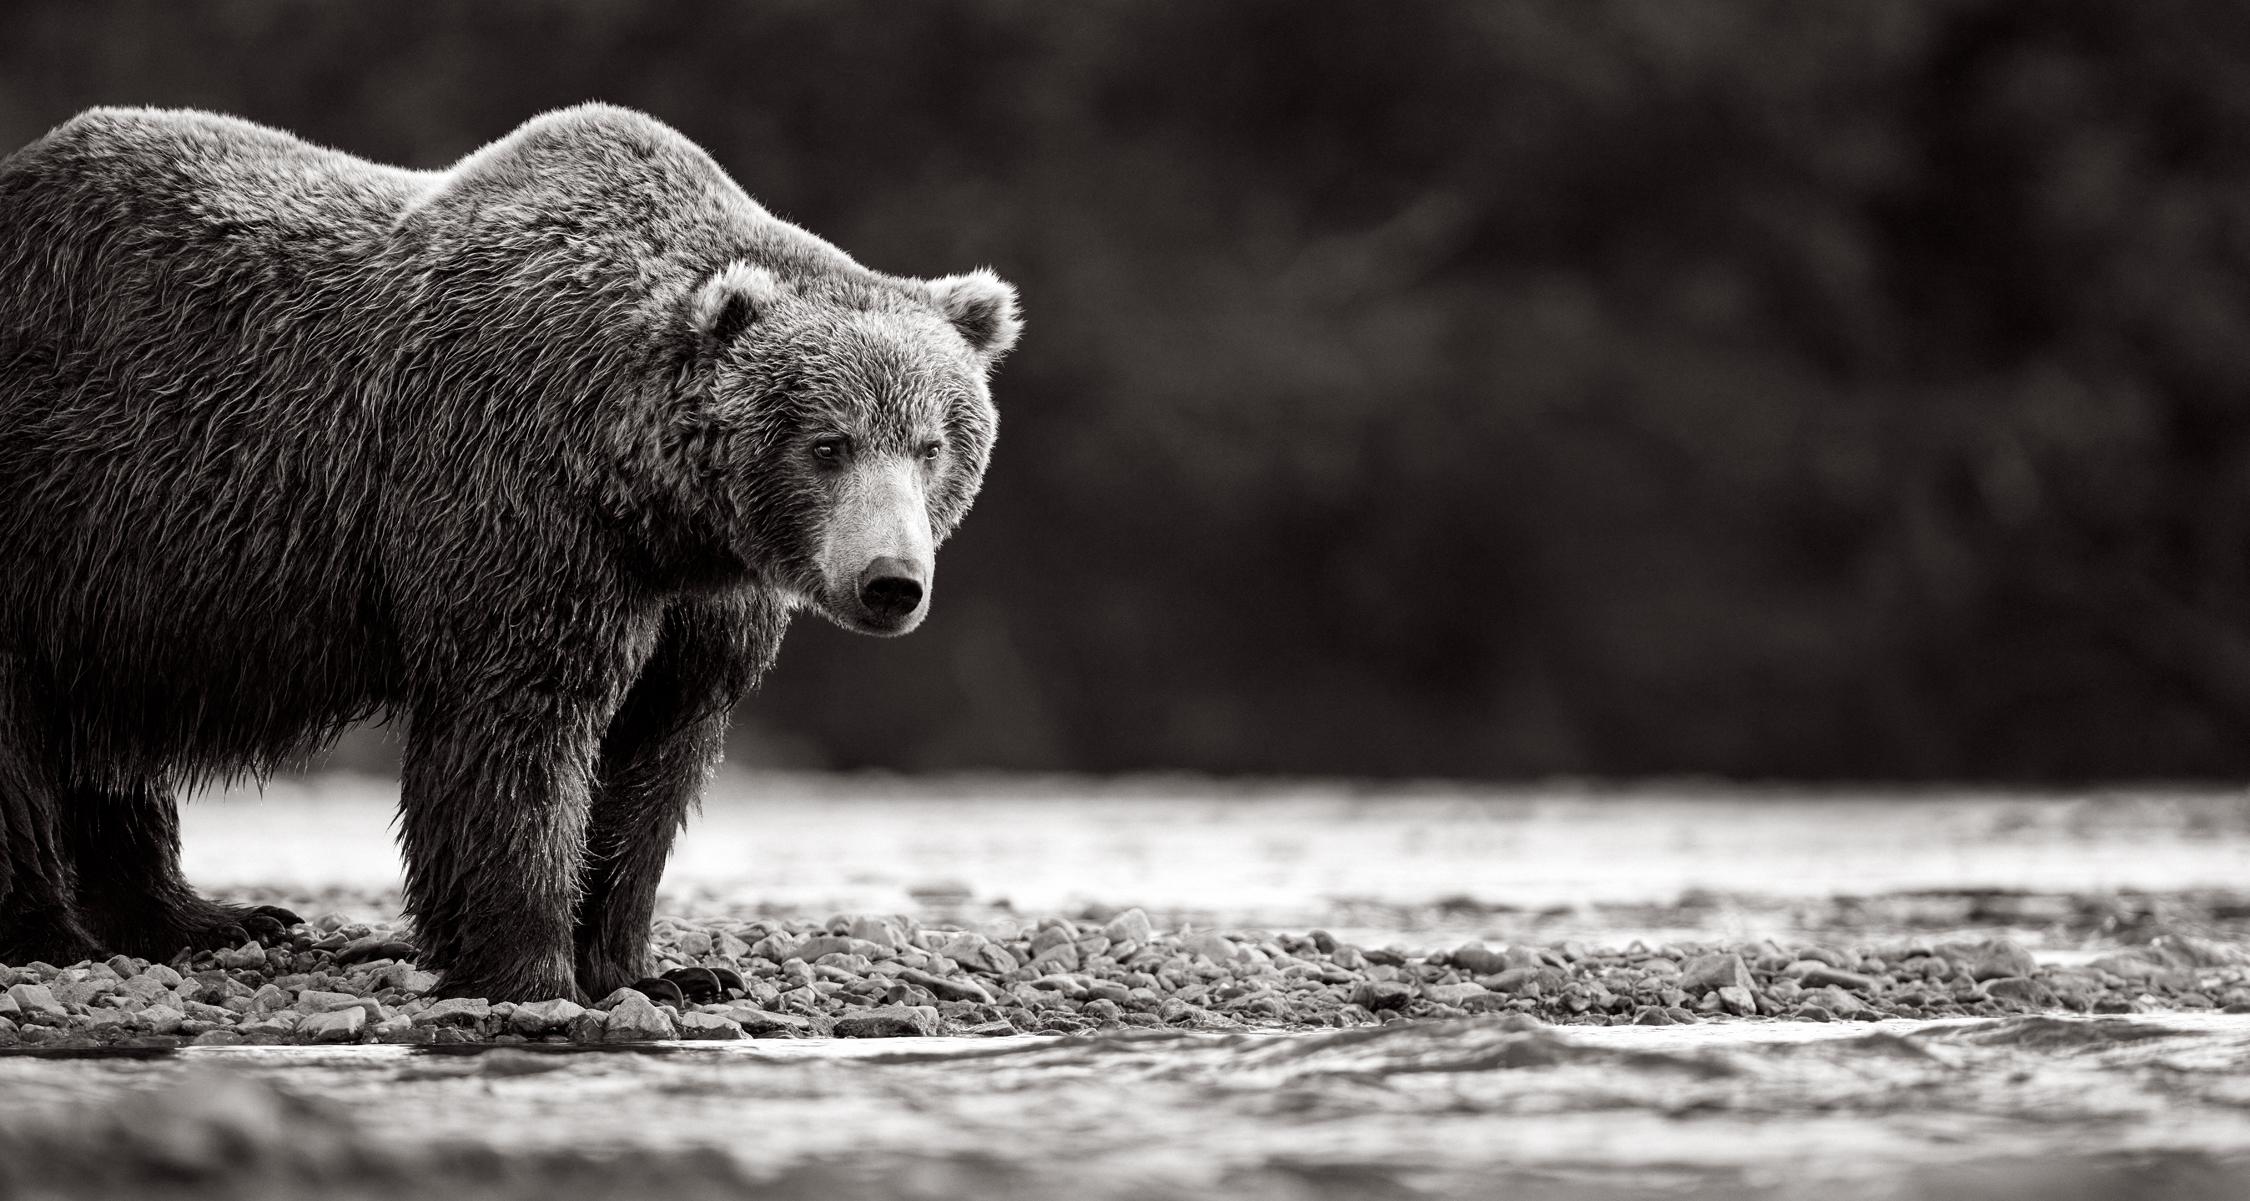 Drew Doggett Black and White Photograph – Brauner Bär am Rande des Wassers